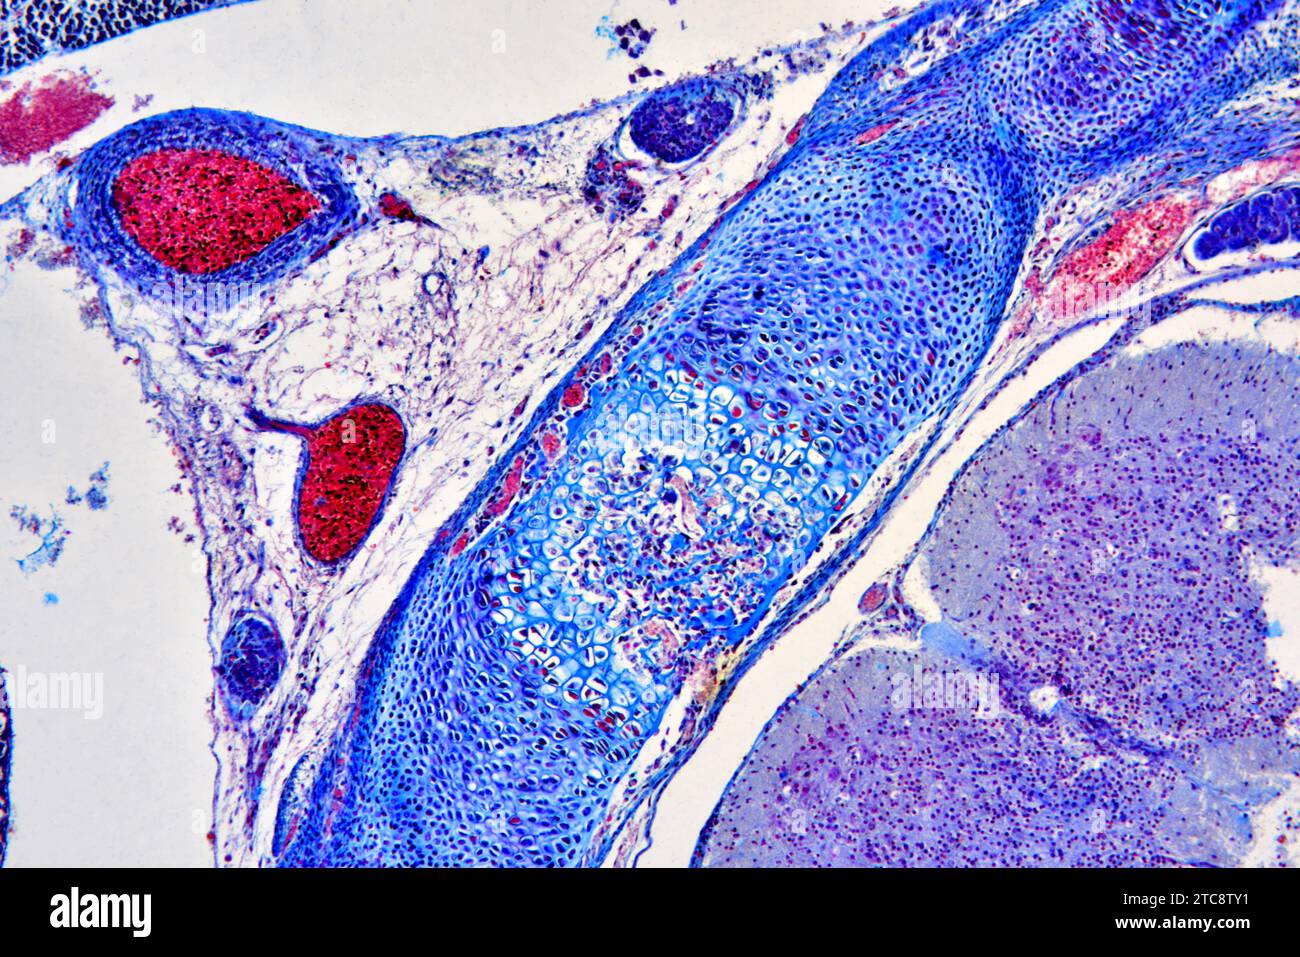 Tissu cartilagineux de communication osseuse chez l'embryon de souris. Microscope optique X150 à 10 cm de large. Banque D'Images